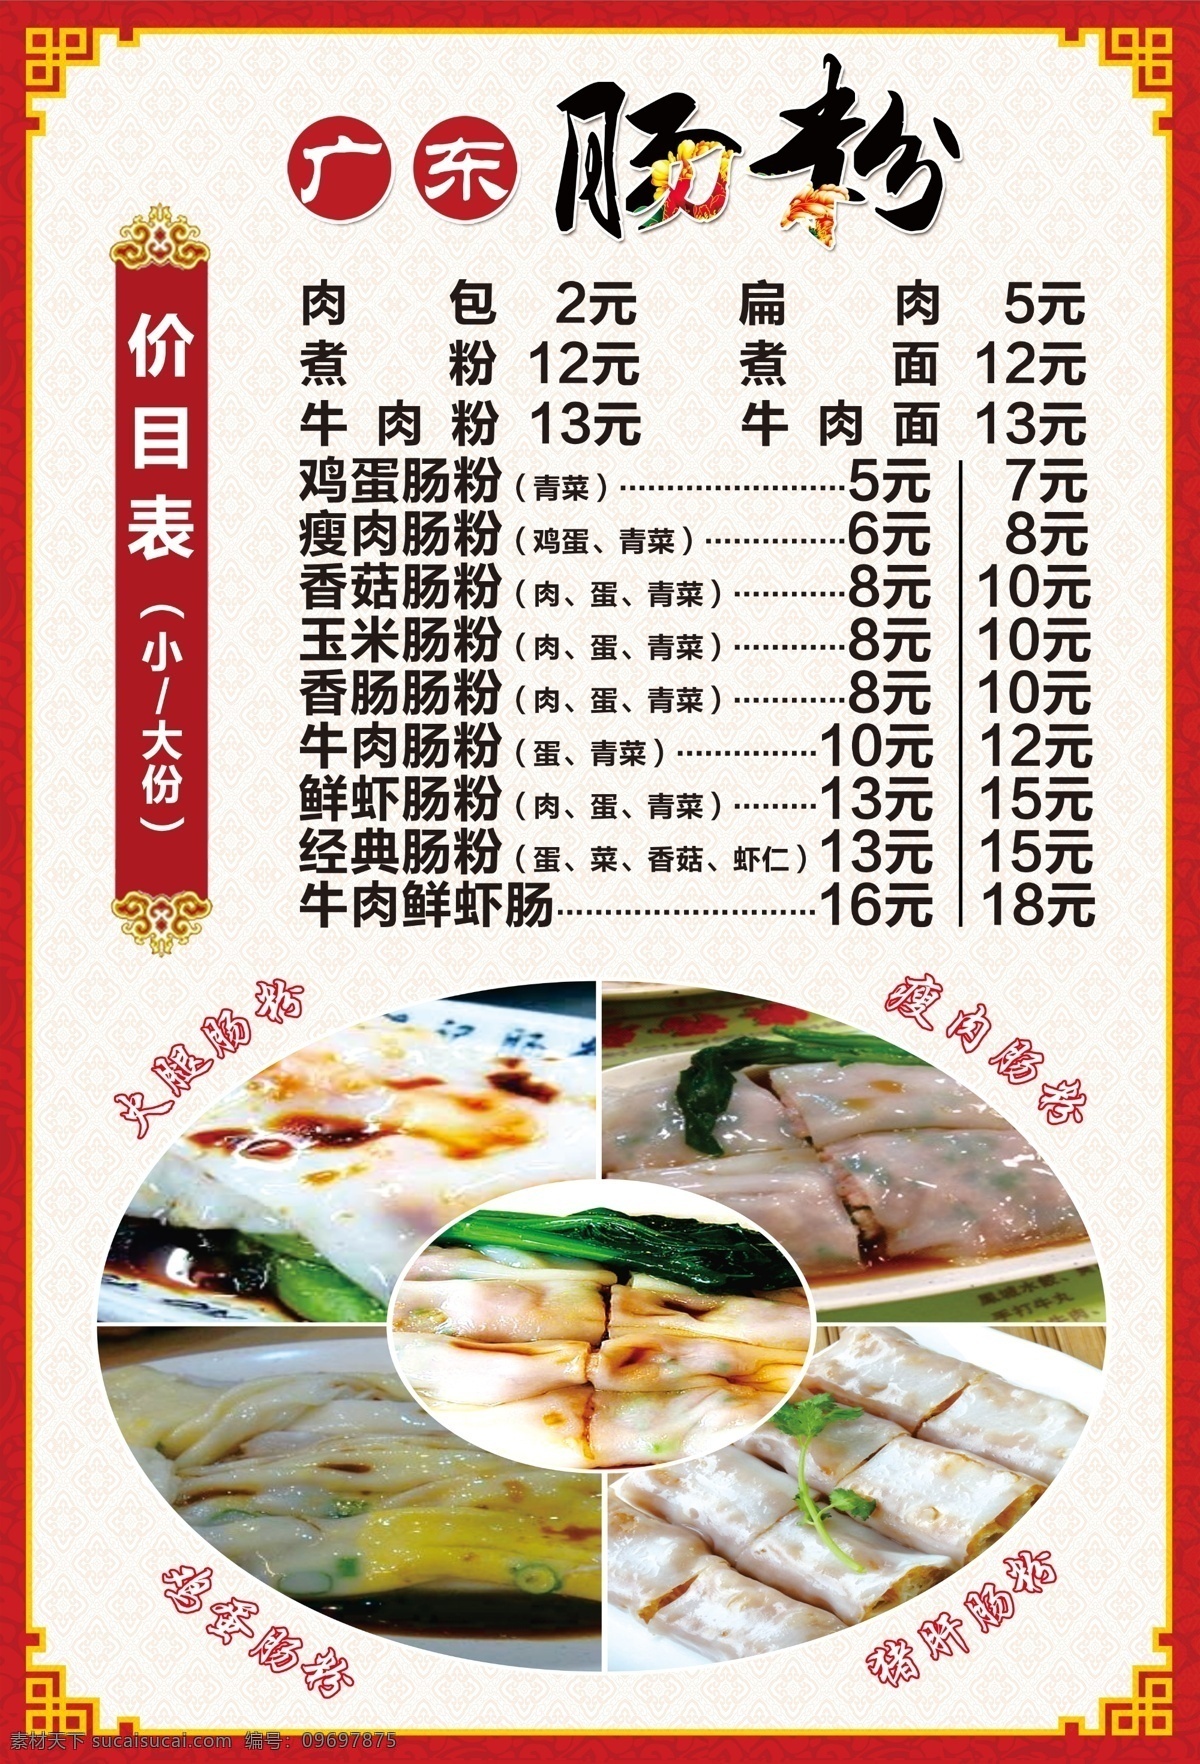 广东肠粉 价目表 广东名小吃 鸡蛋肠粉 价格表 资源共享